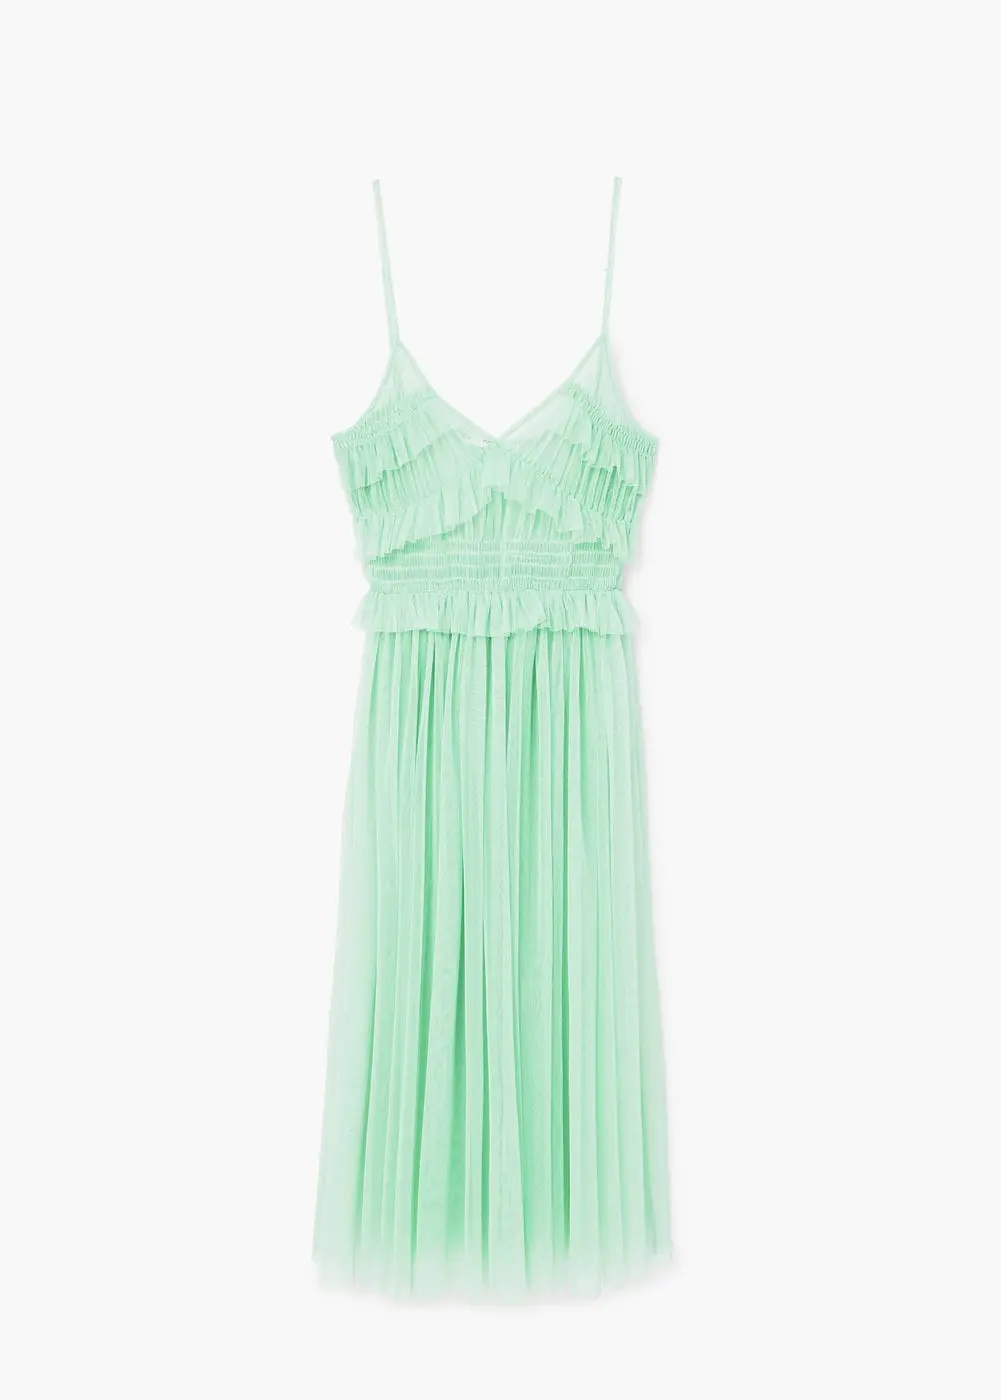 Tulle dress, colour: aqua green, Rp. 299.000. (Image: shop.mango.com)